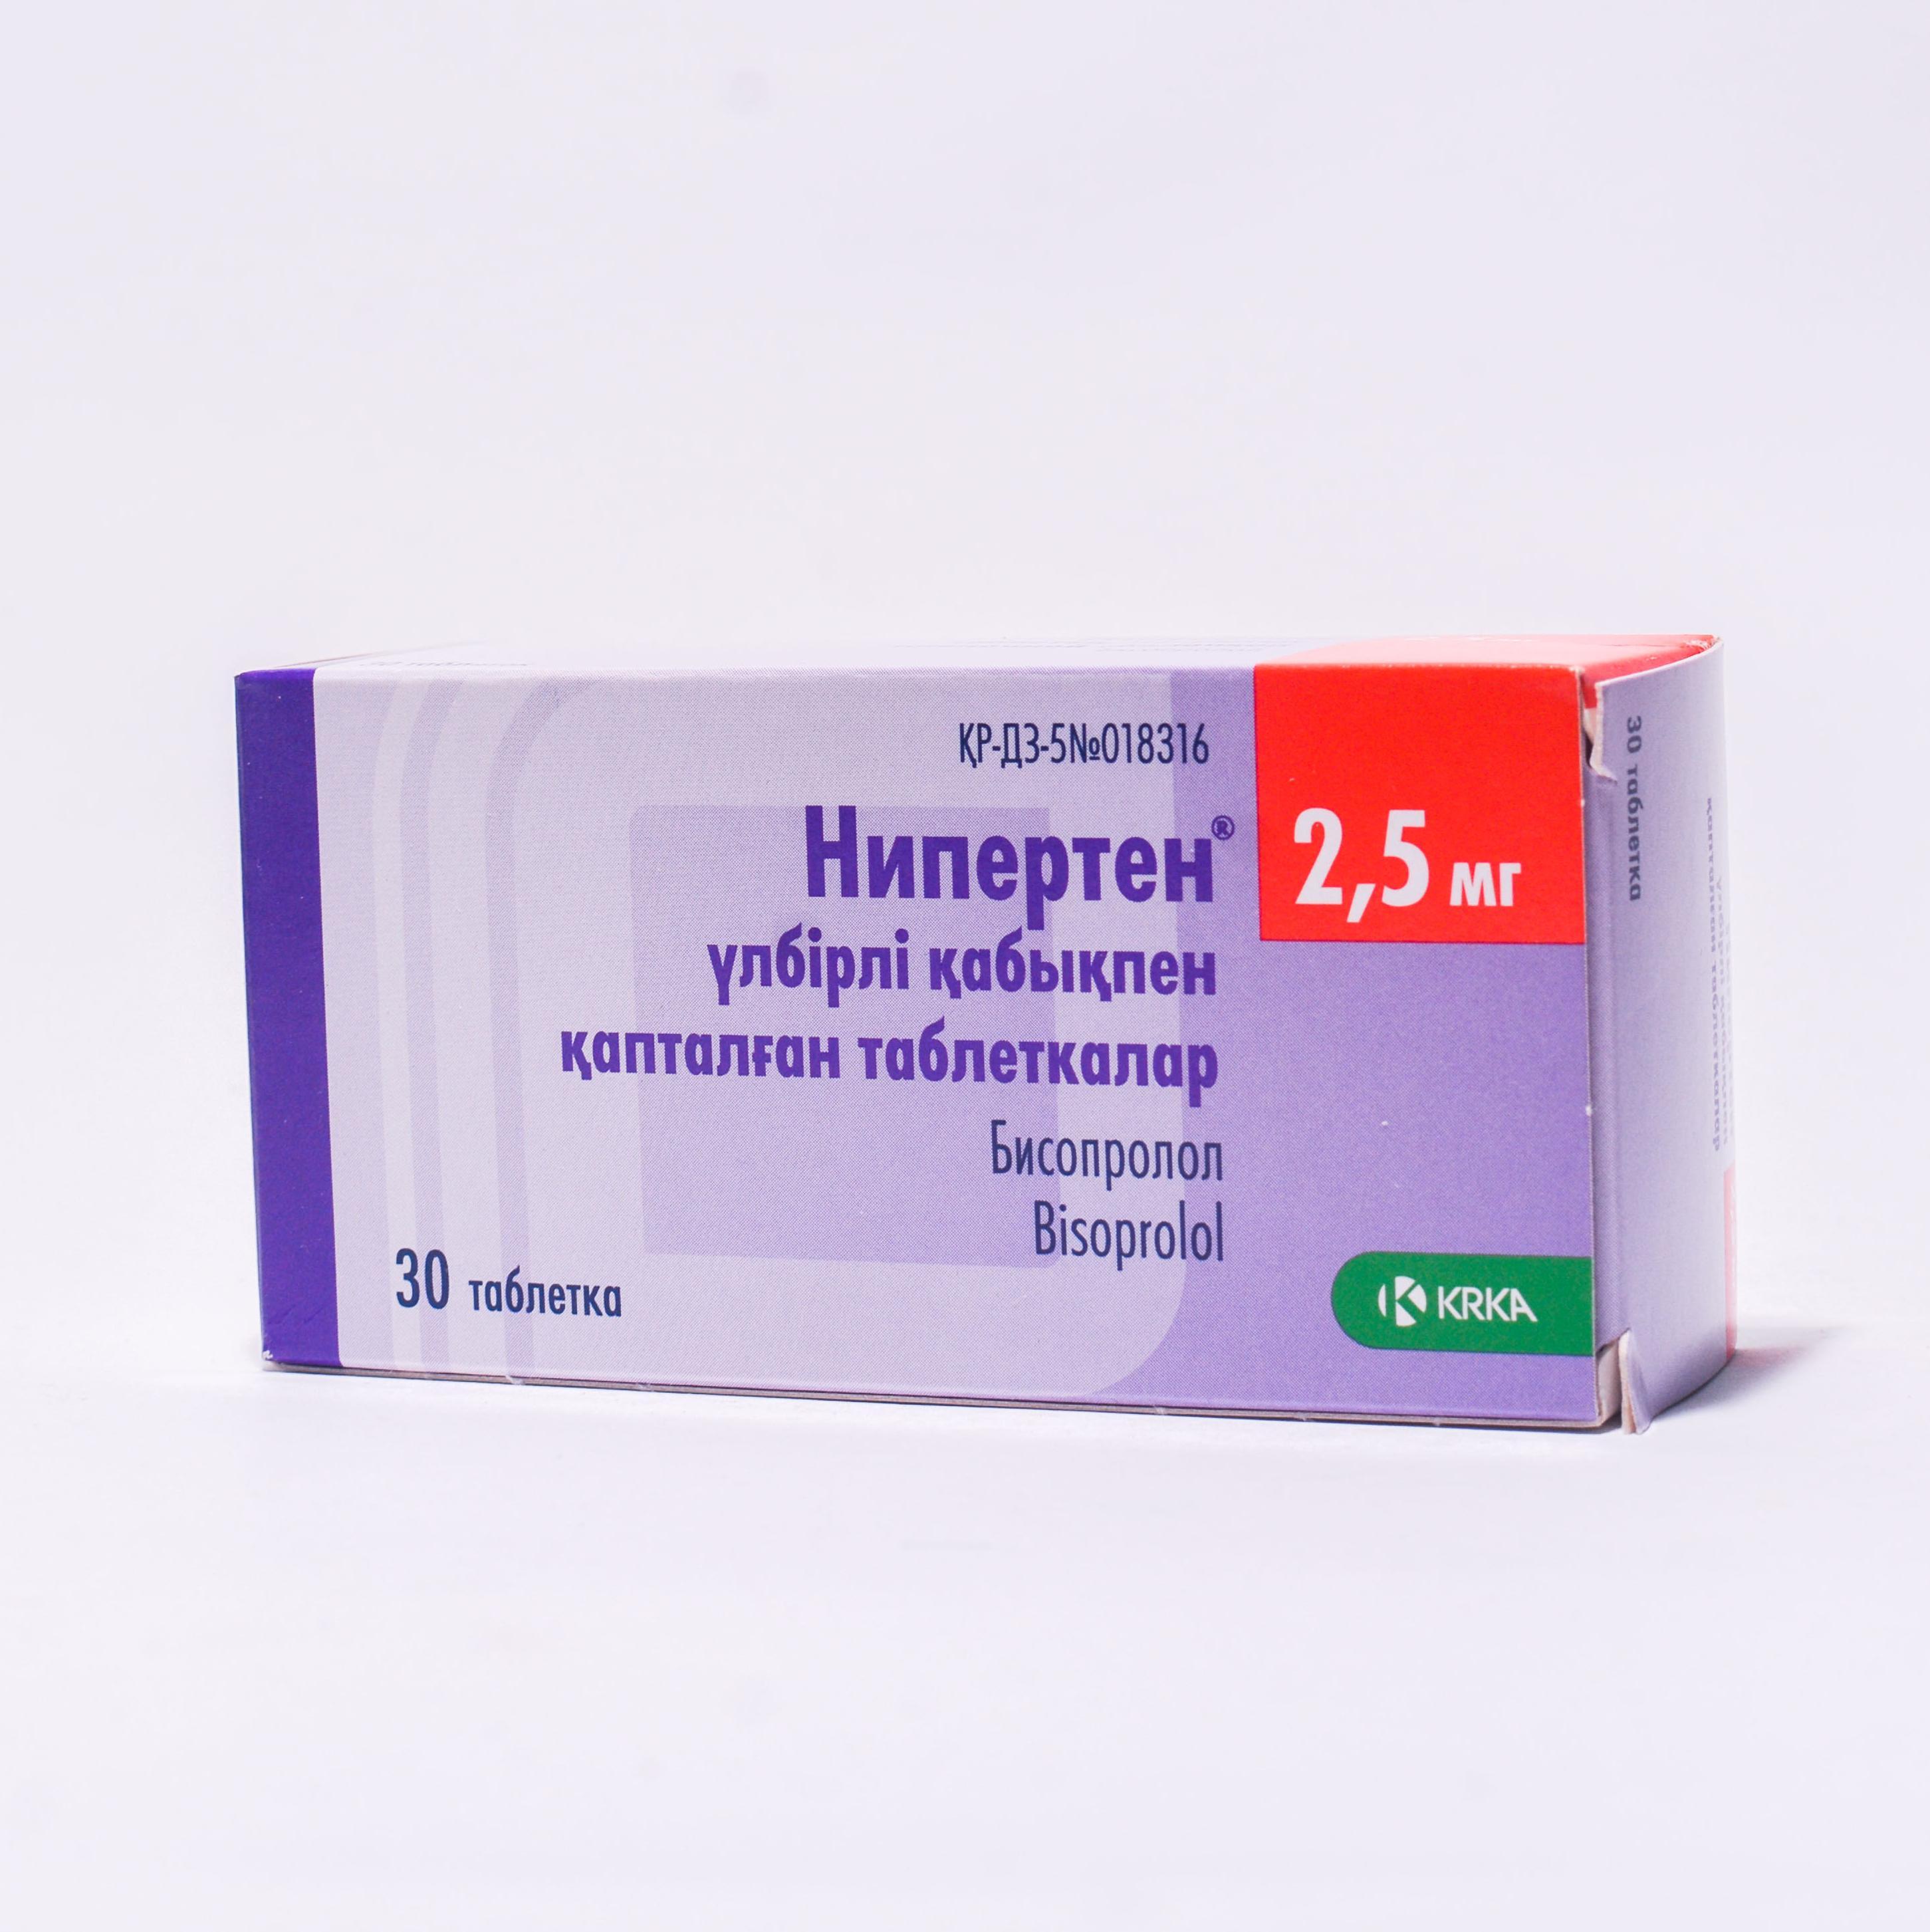 Нипертен таблеткалар 2,5 мг № 30